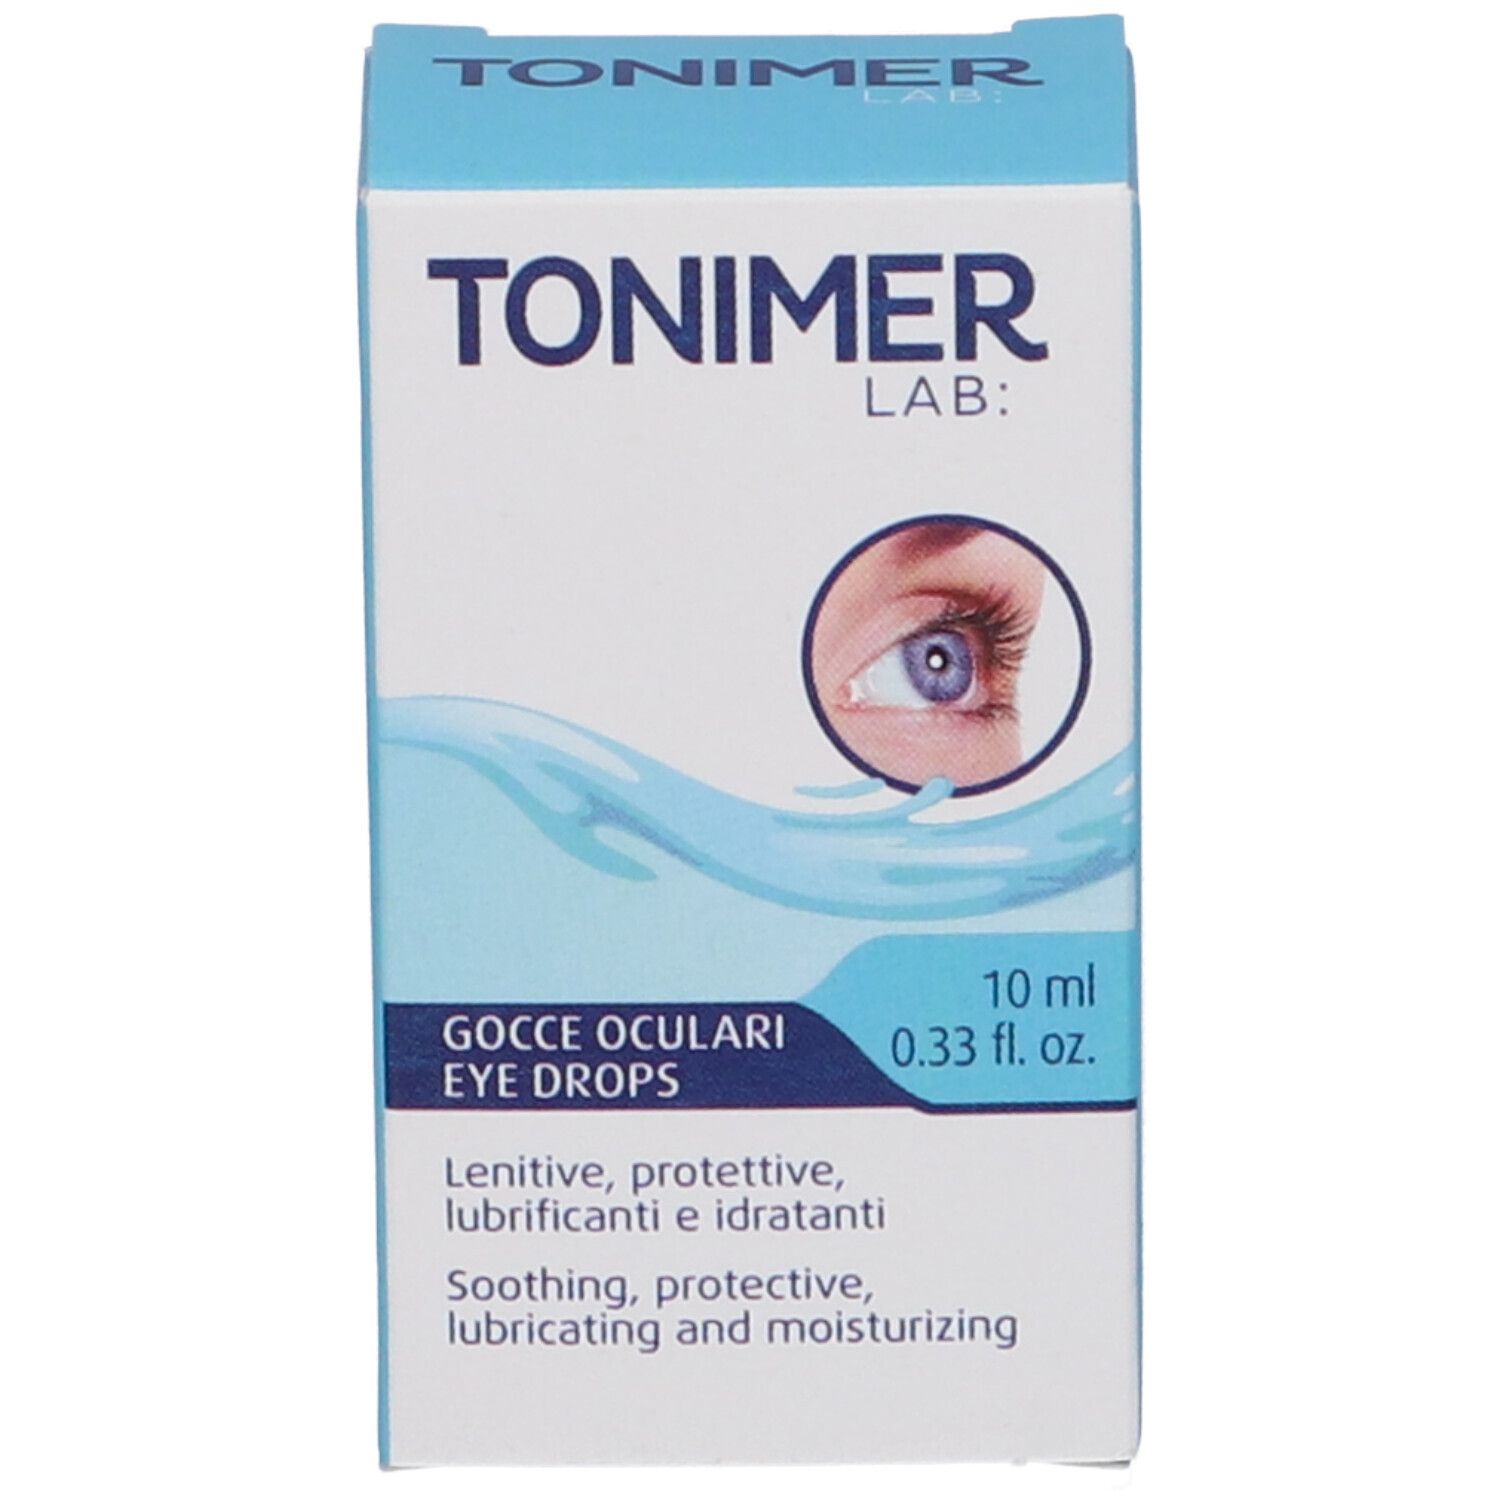 Tonimer Lab: Gocce Oculari